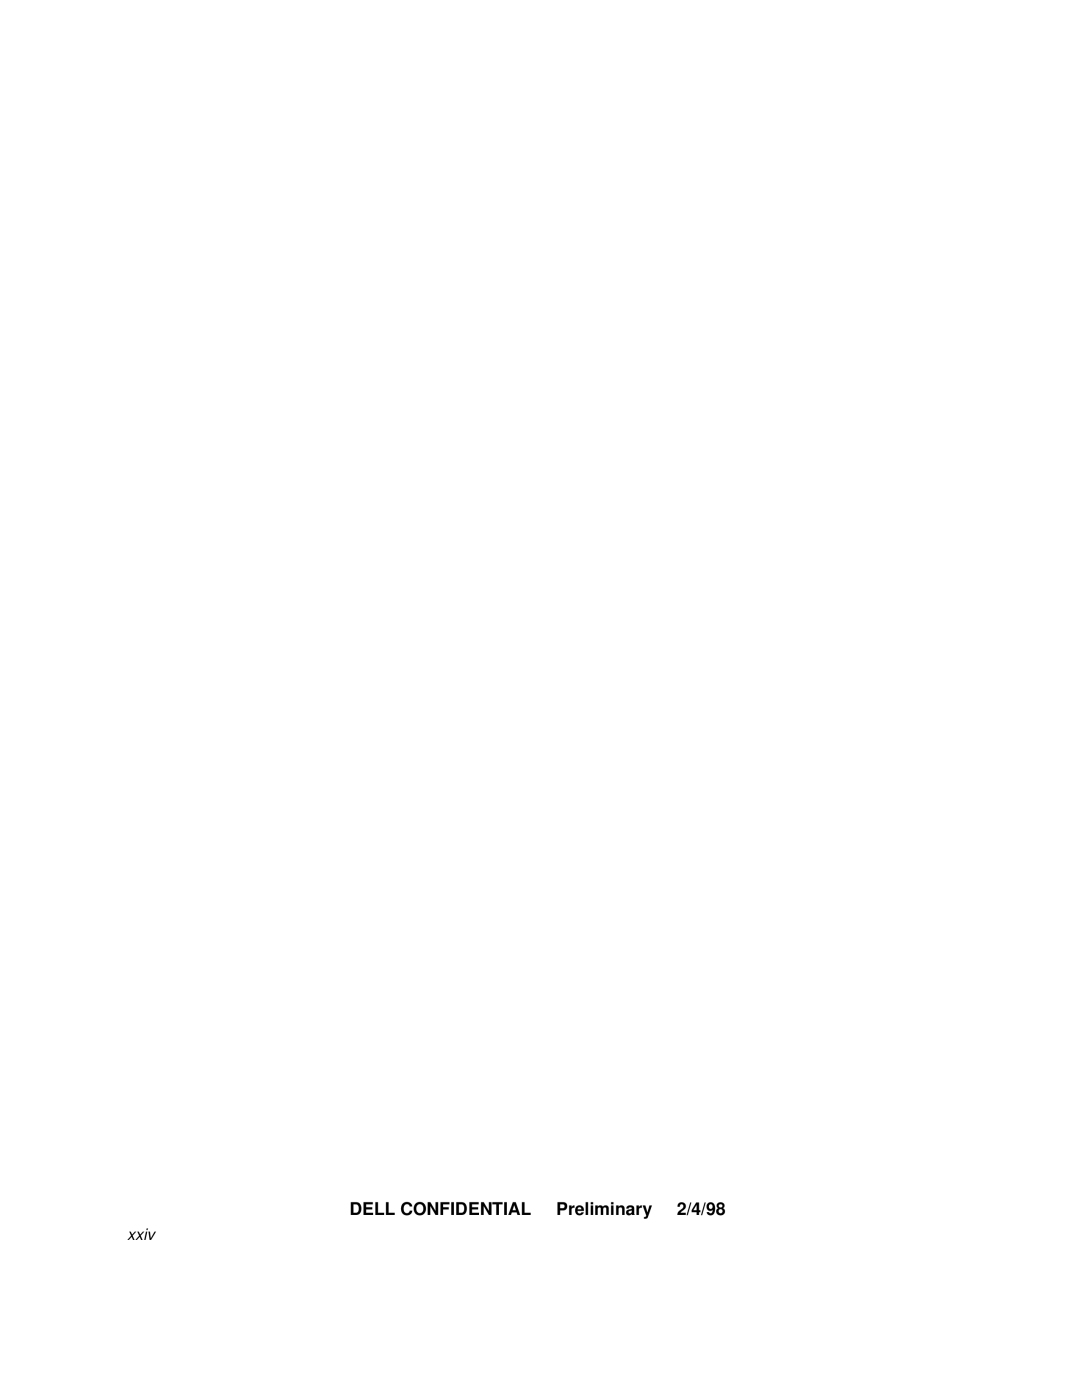 Dell 3000 manual DELL CONFIDENTIAL Preliminary 2/4/98, xxiv 